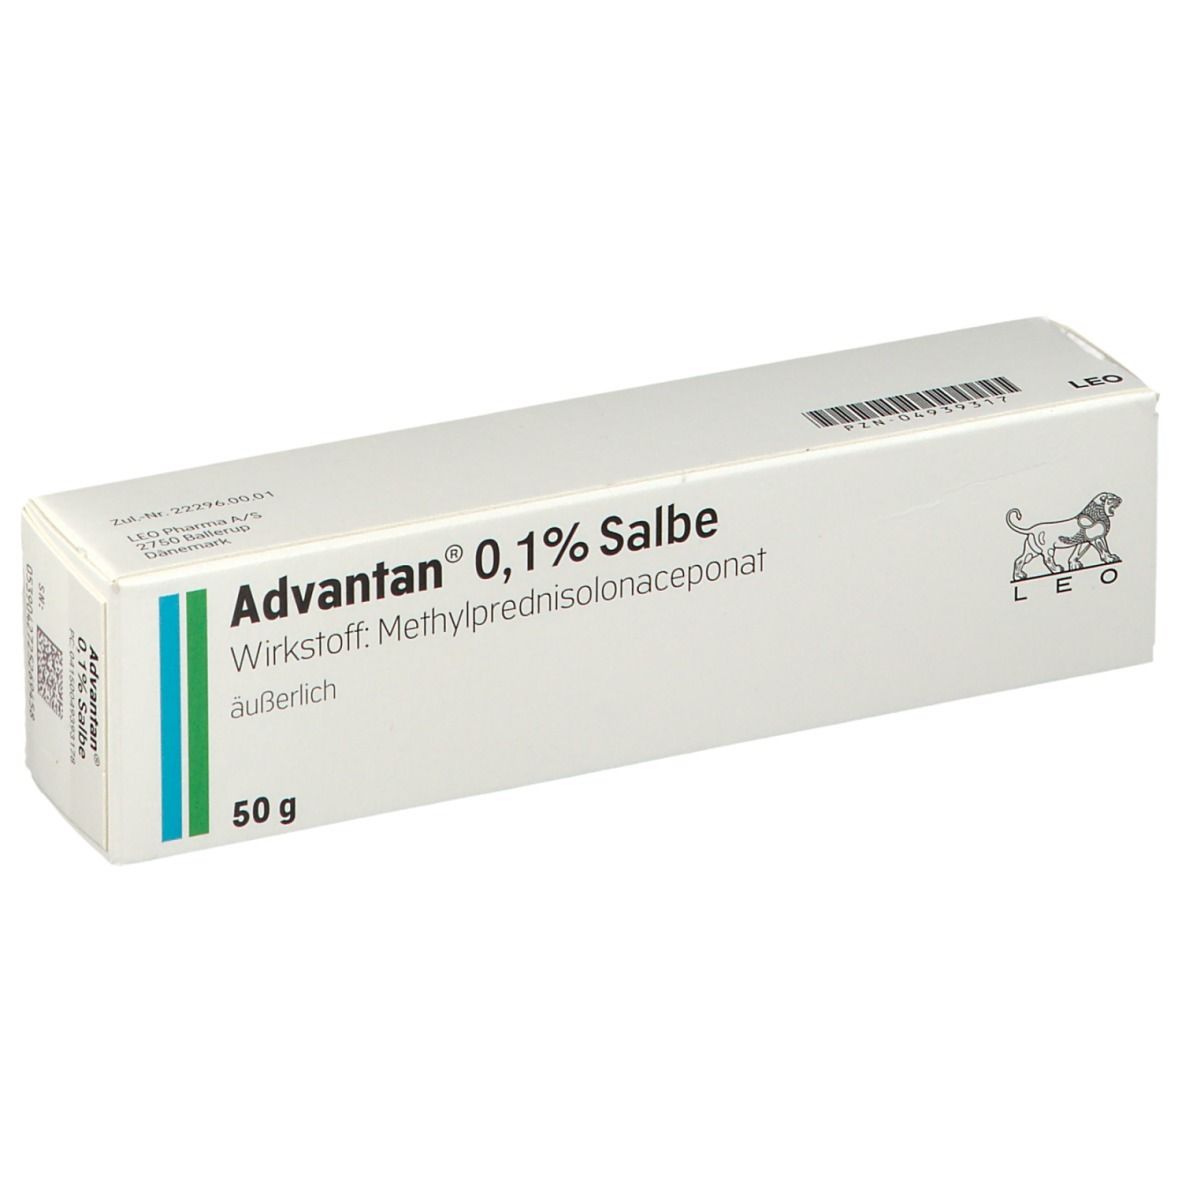 Advantan® 0,1% Salbe